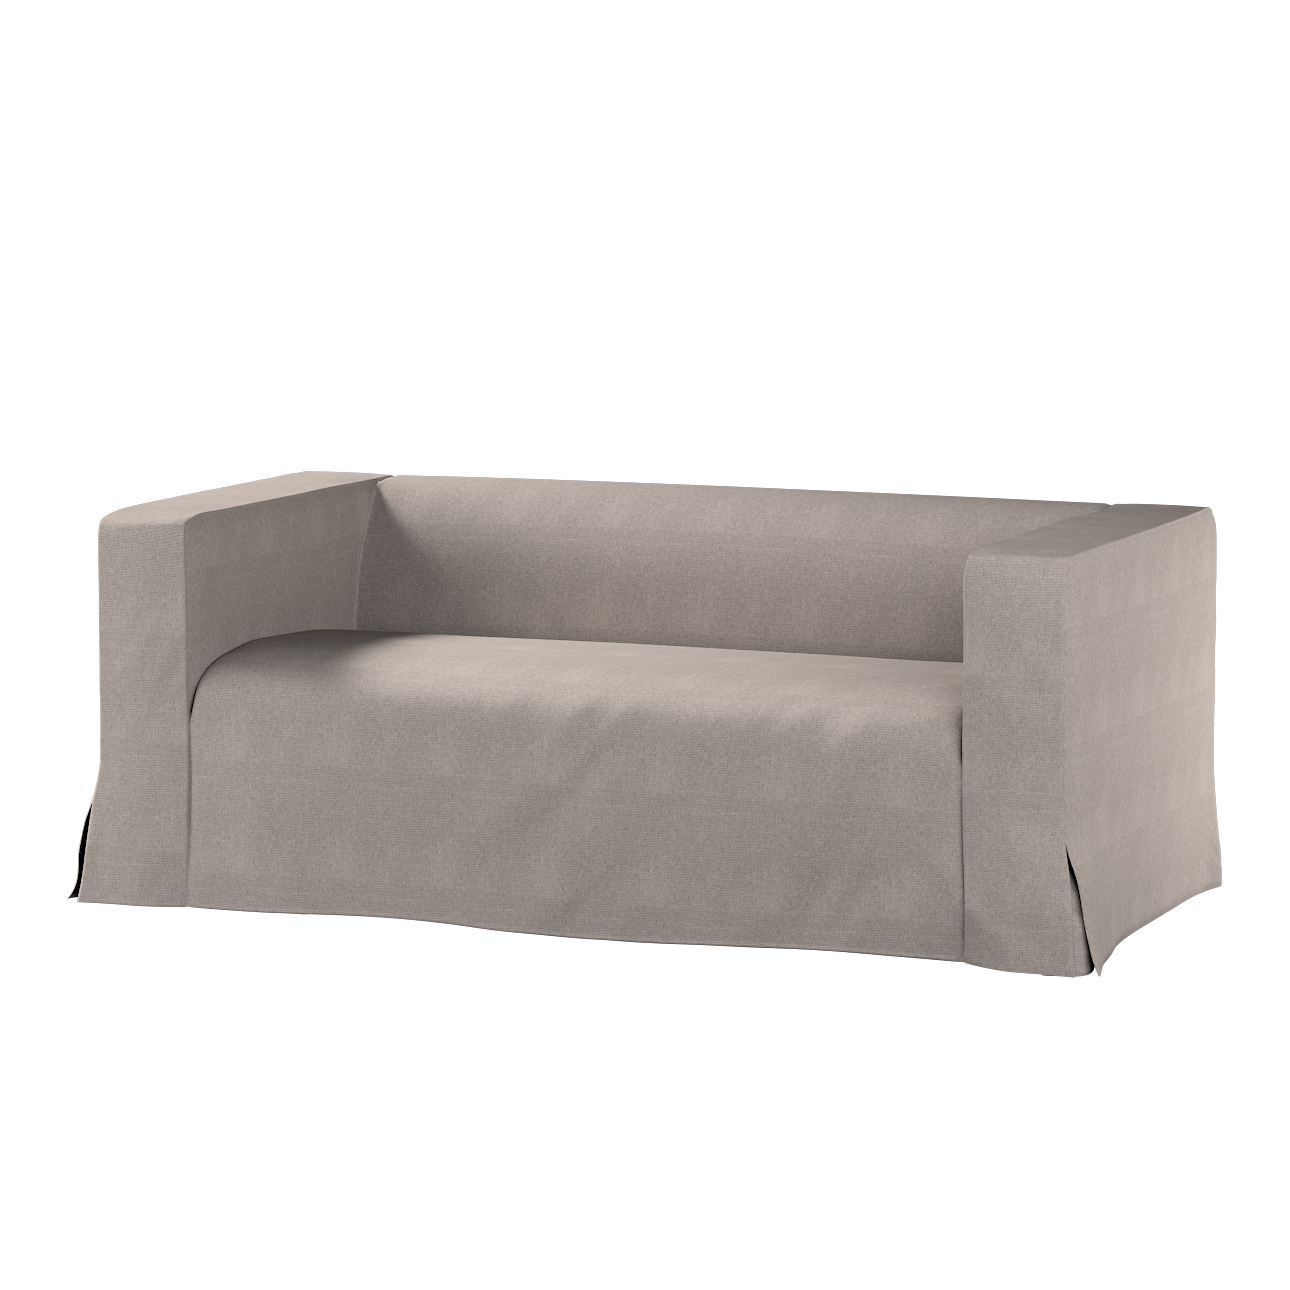 Bezug für Klippan 2-Sitzer Sofa, lang mit Kellerfalte, beige-grau, Klippan günstig online kaufen